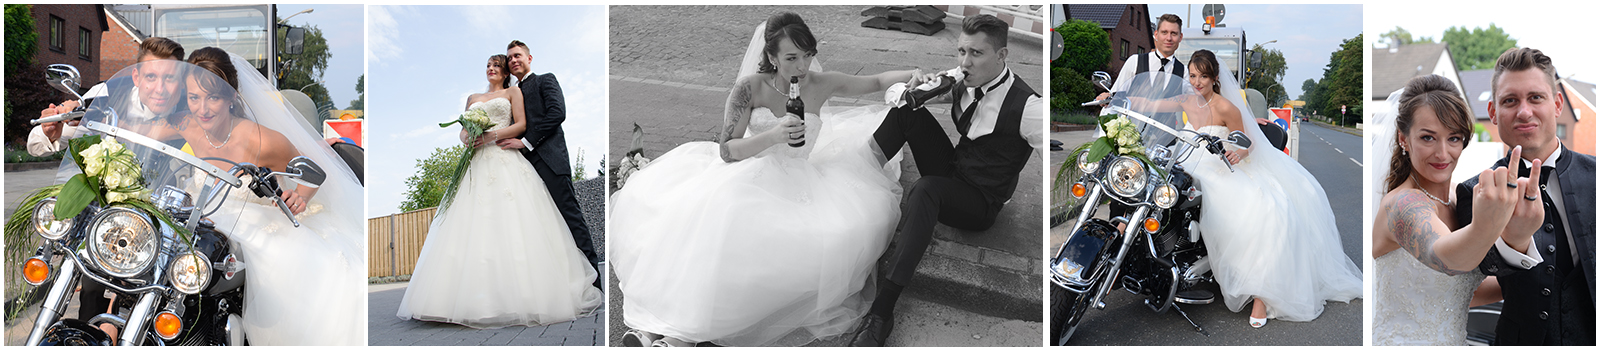 Foto-1-Hochzeit-Beer.jpg